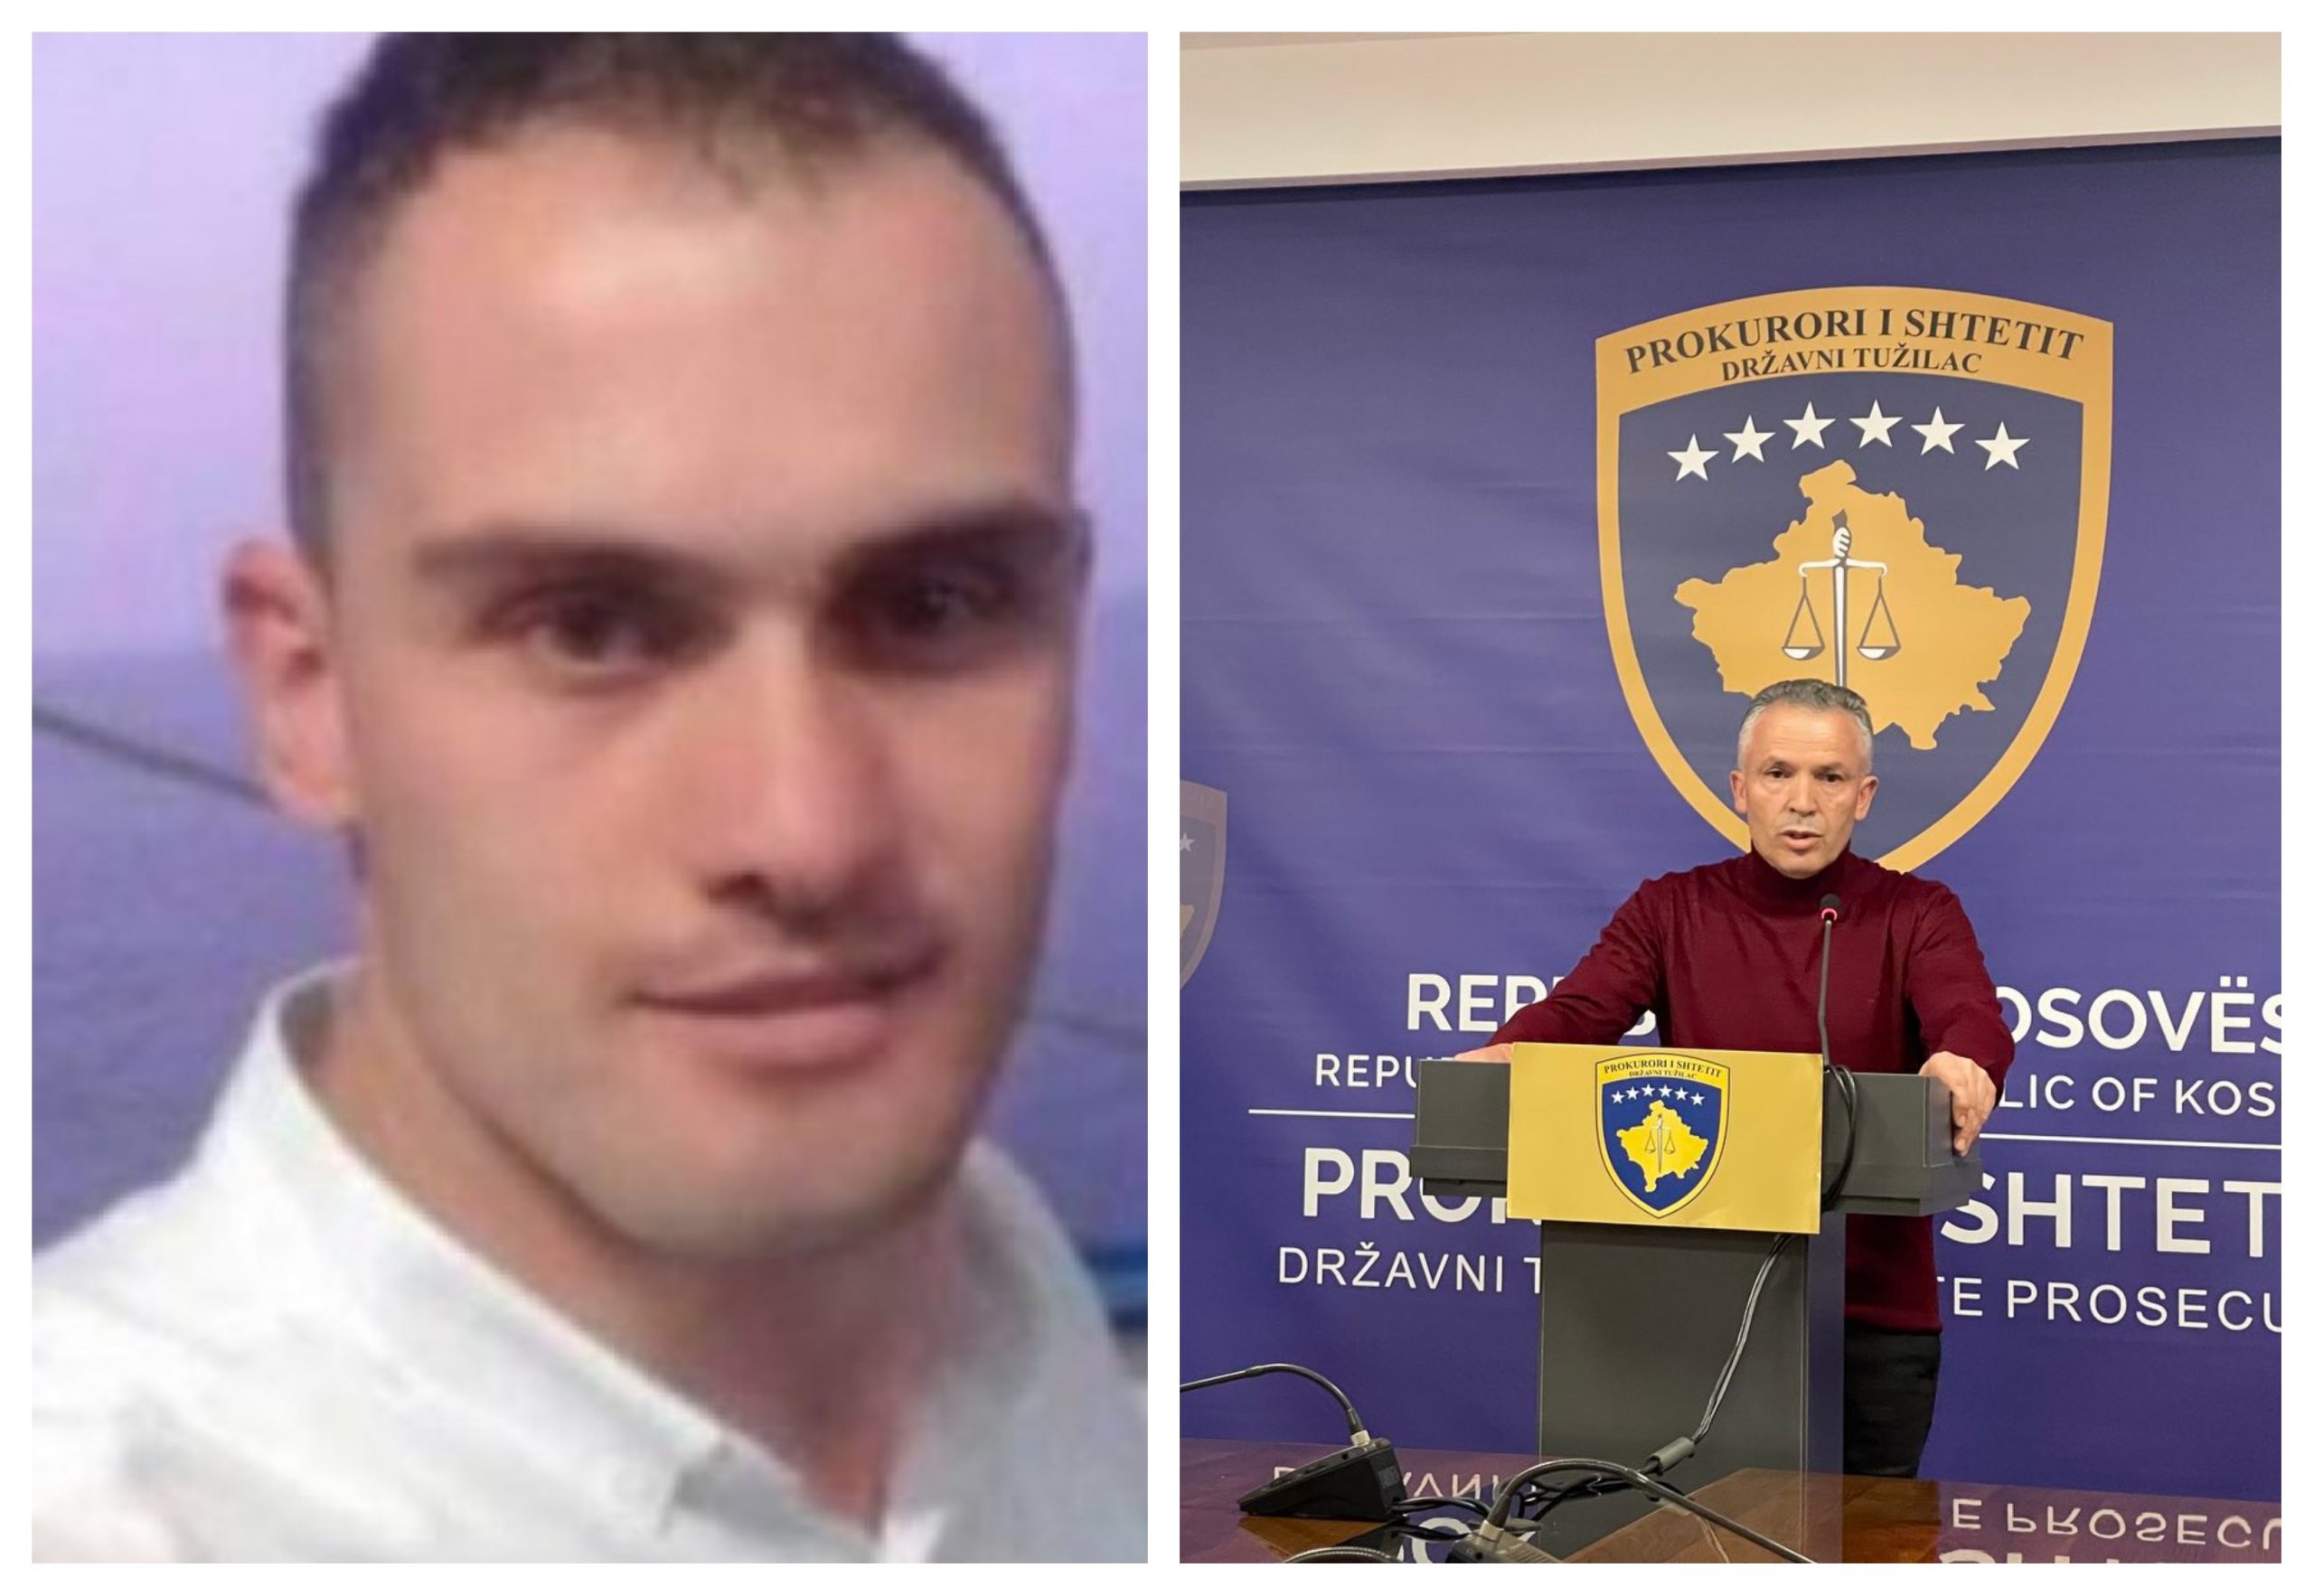 Prokurori që kishte liruar Sokol Halilin: Nëse ka pasur lëshime, jap përgjegjësi